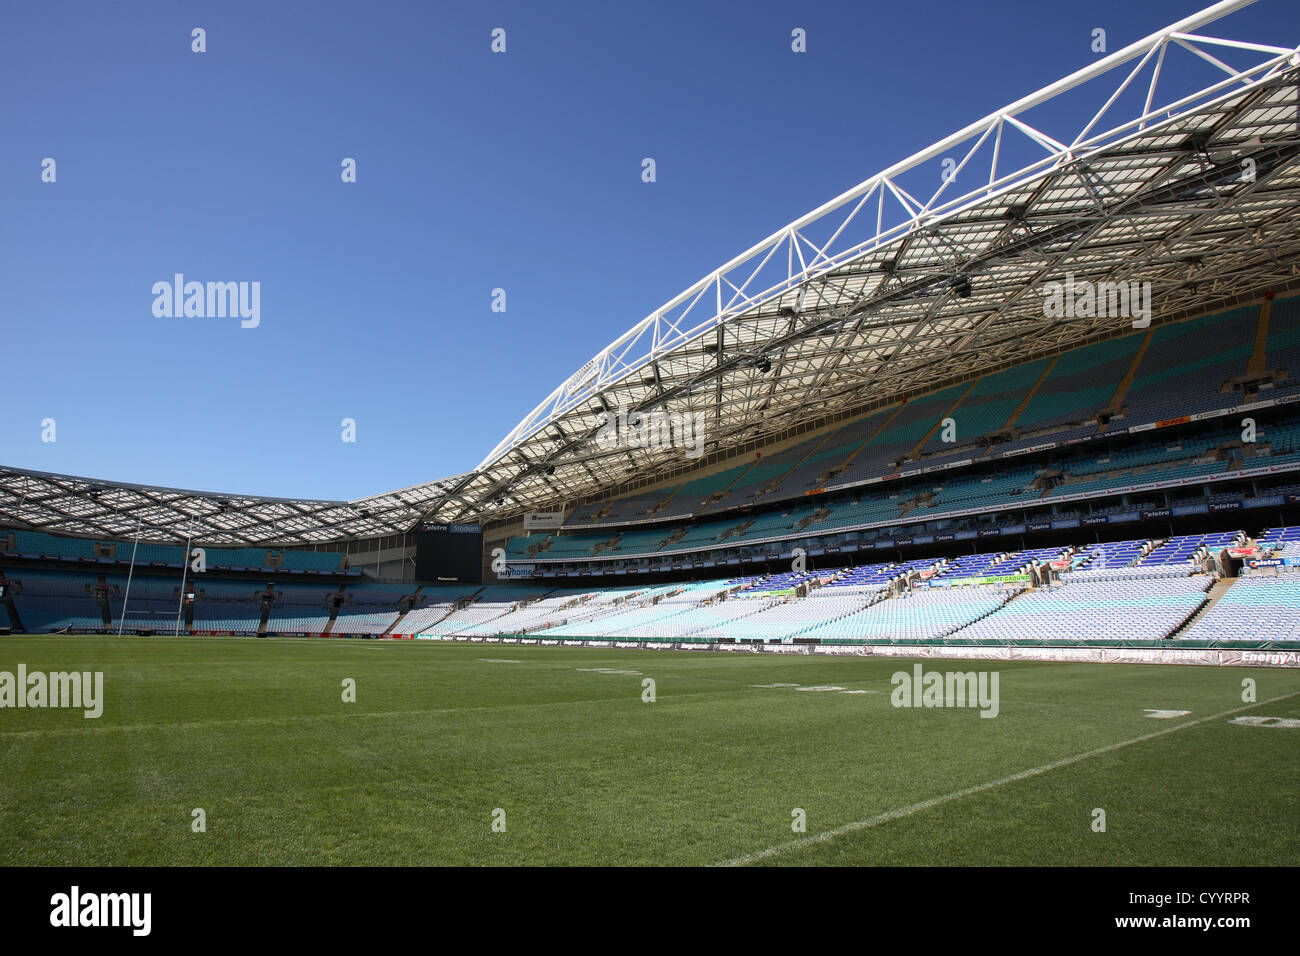 Australia-Stadion im Sydney Olympic Park. Homebush Bay, Sydney, Australien. Stockfoto